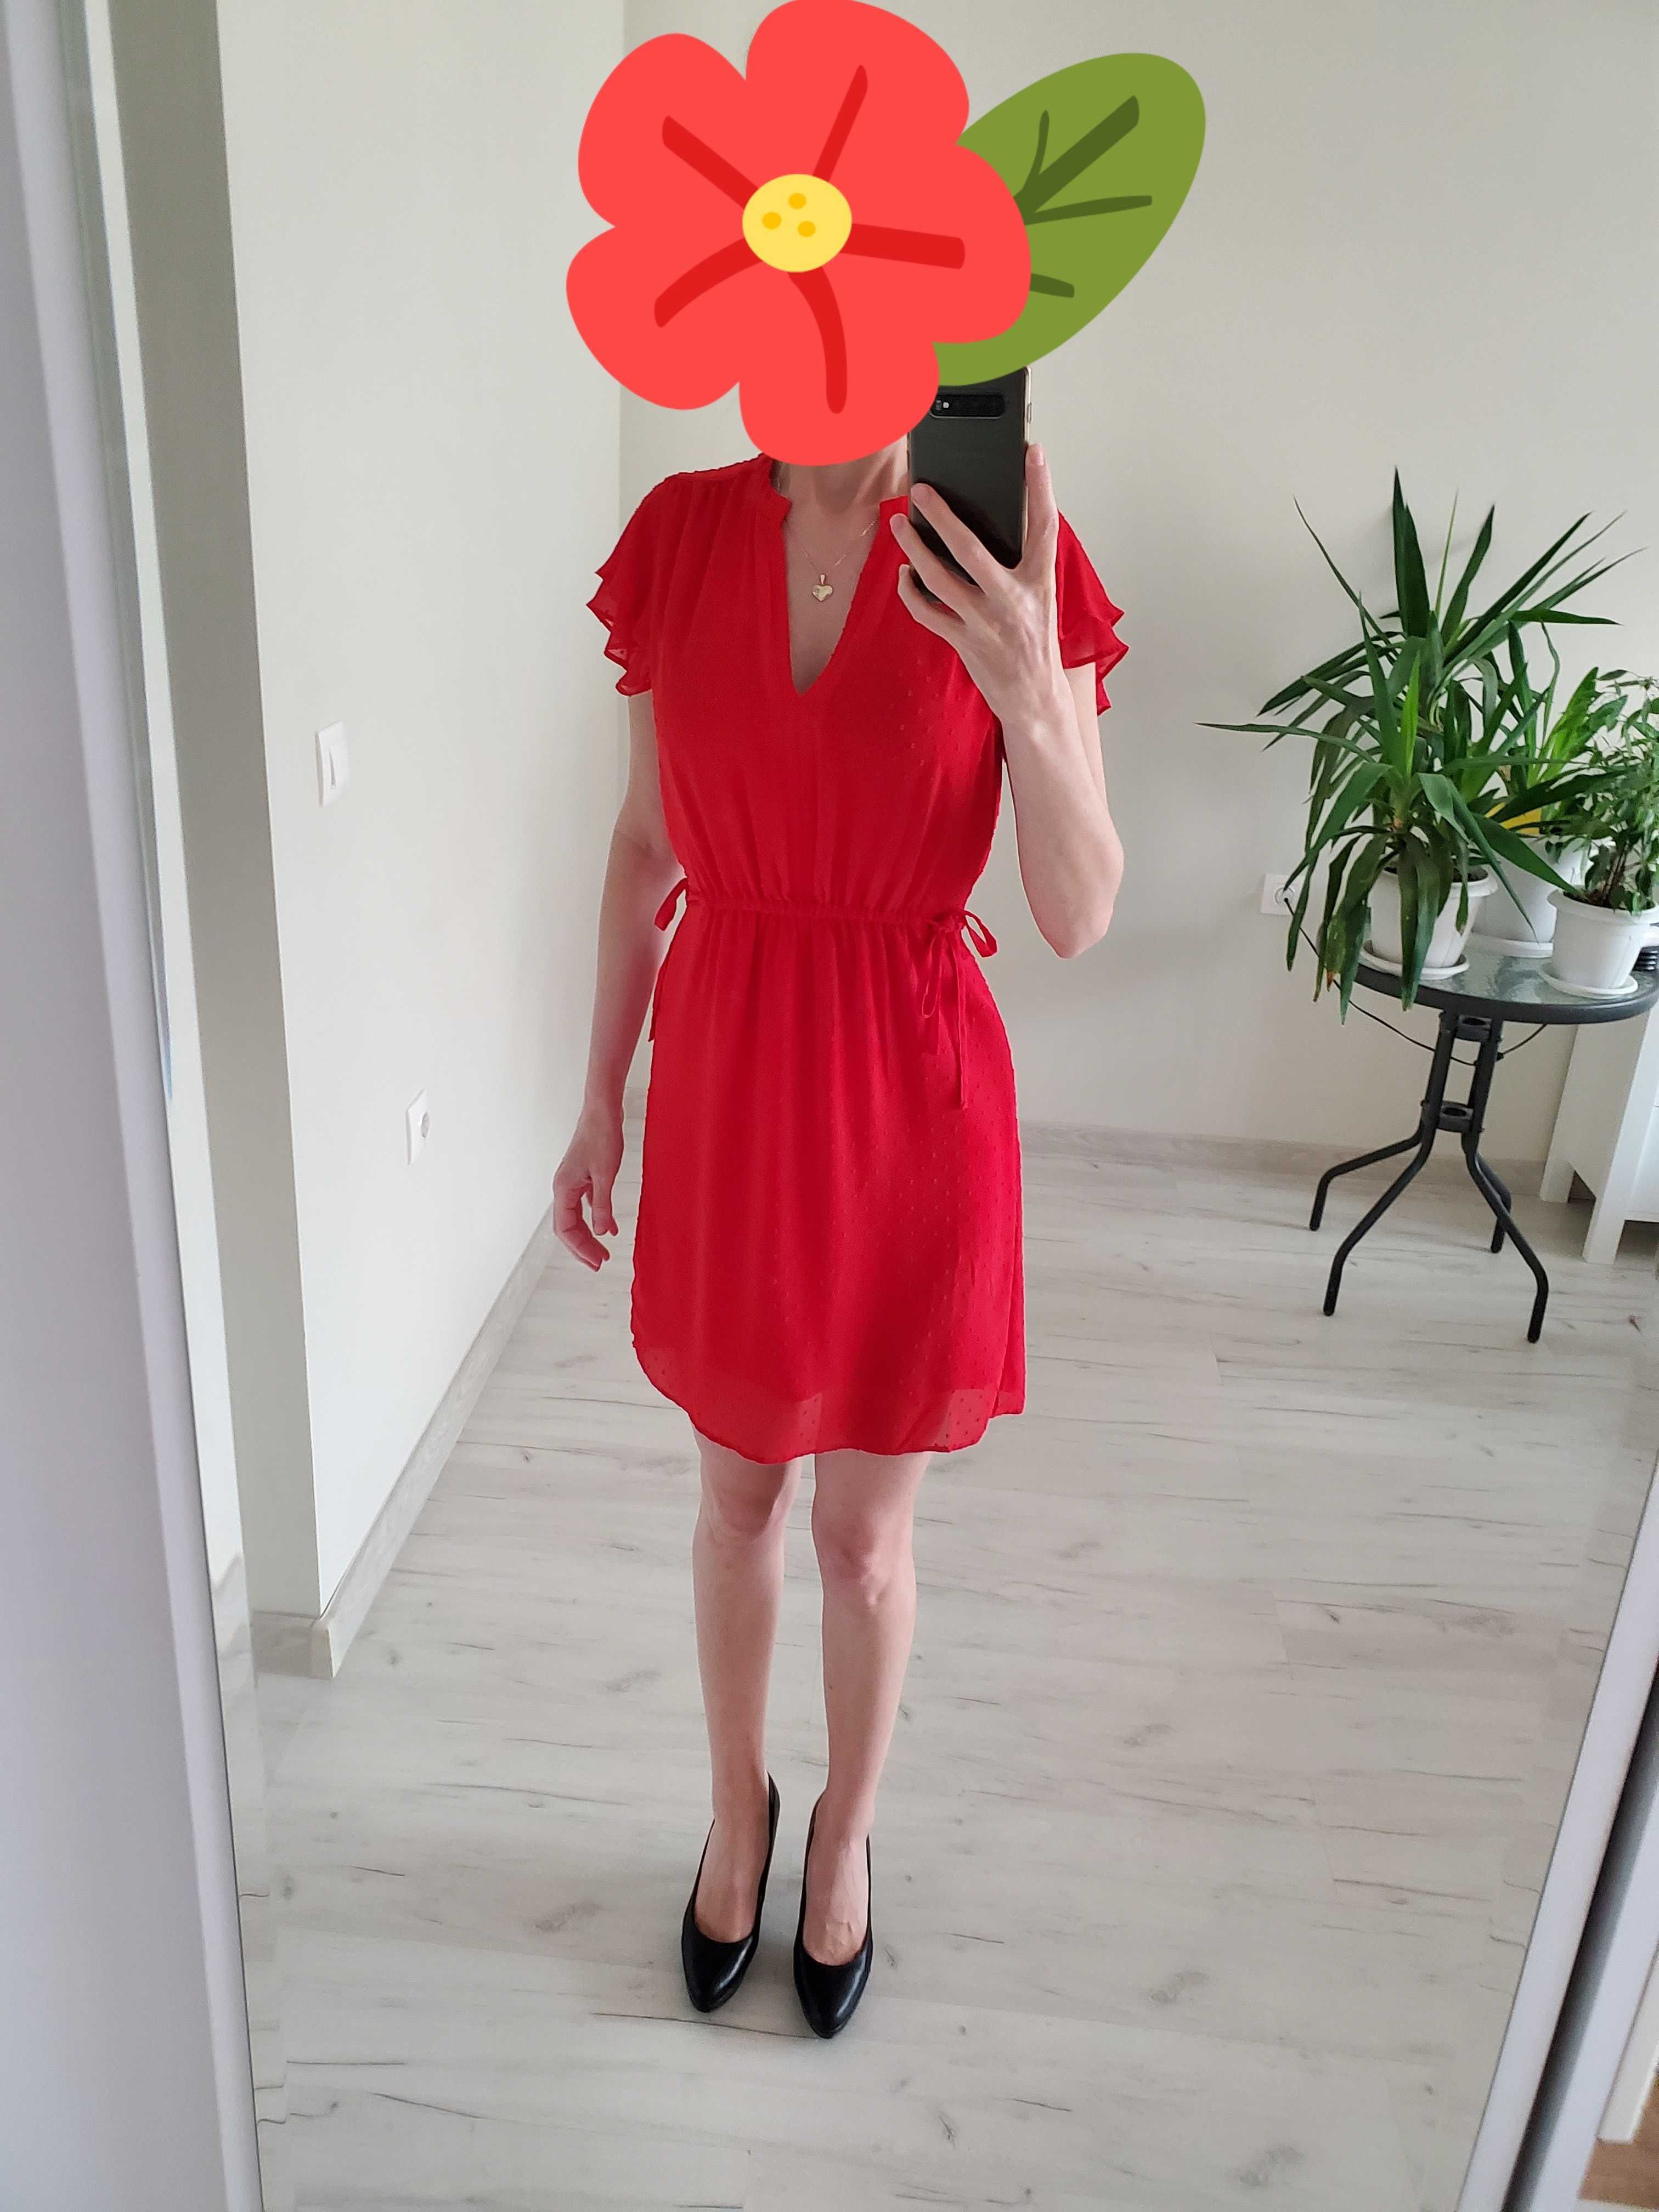 Продавам лятна рокля на Х&M в червено с връзки - на цветя - размер S